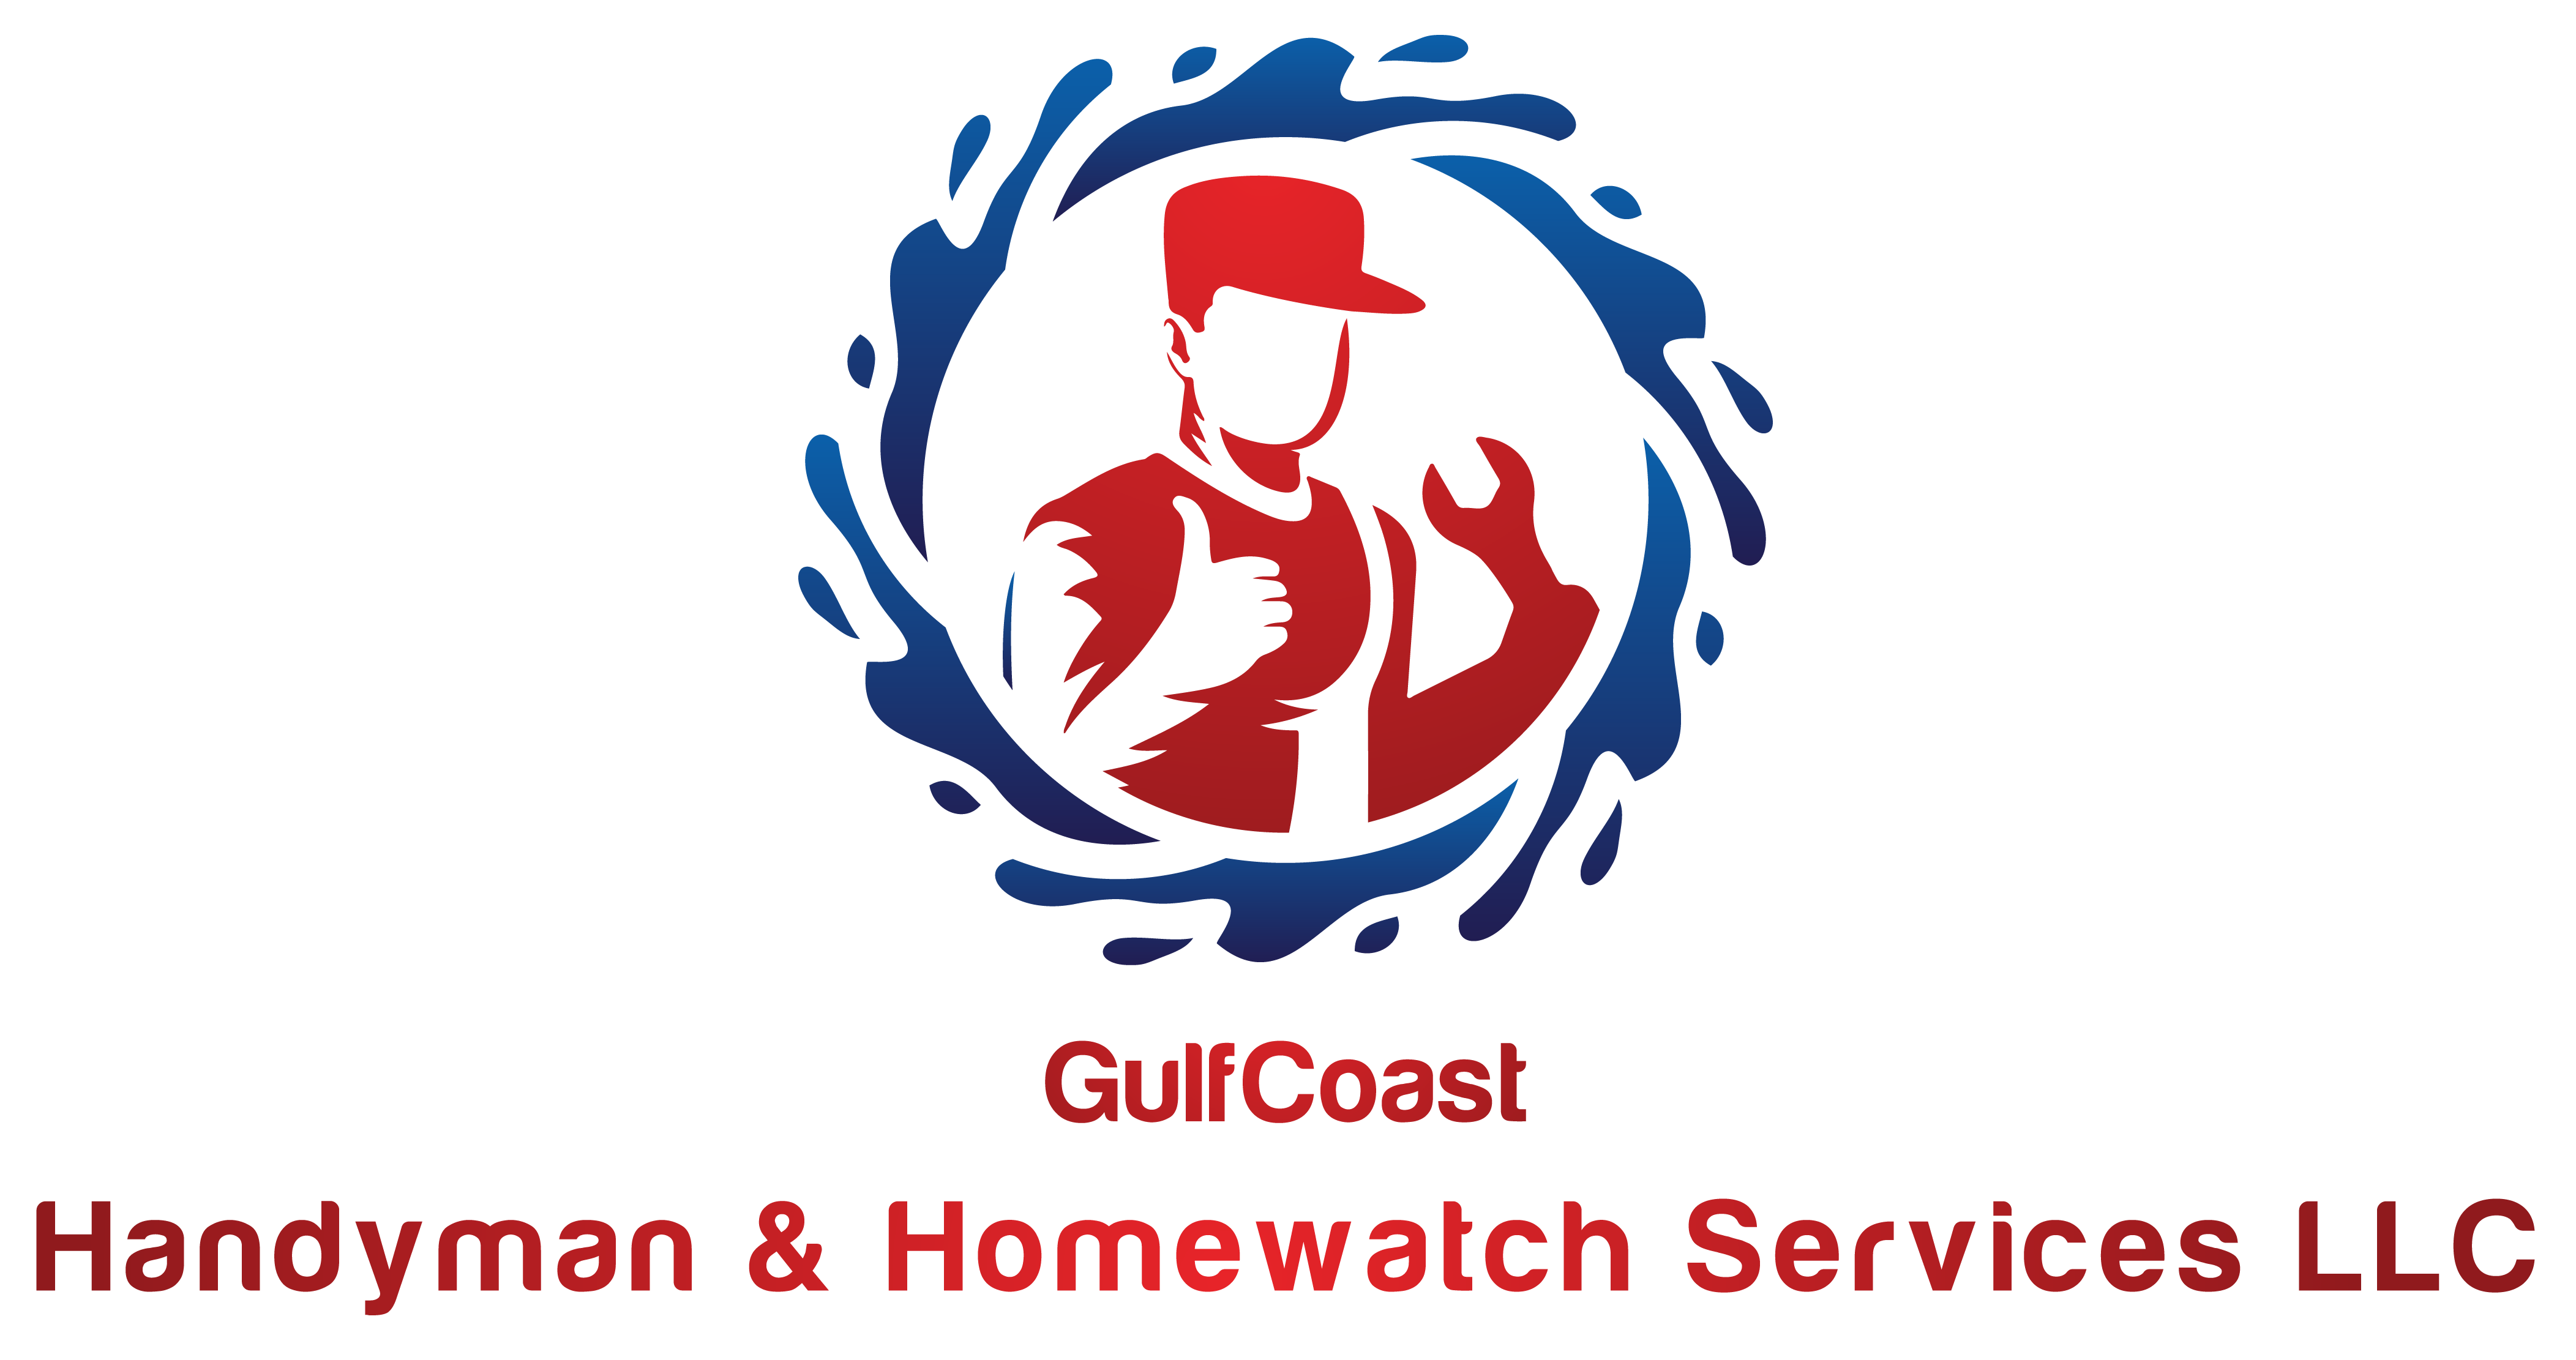 Gulf Coast Handyman & Homewatch Services